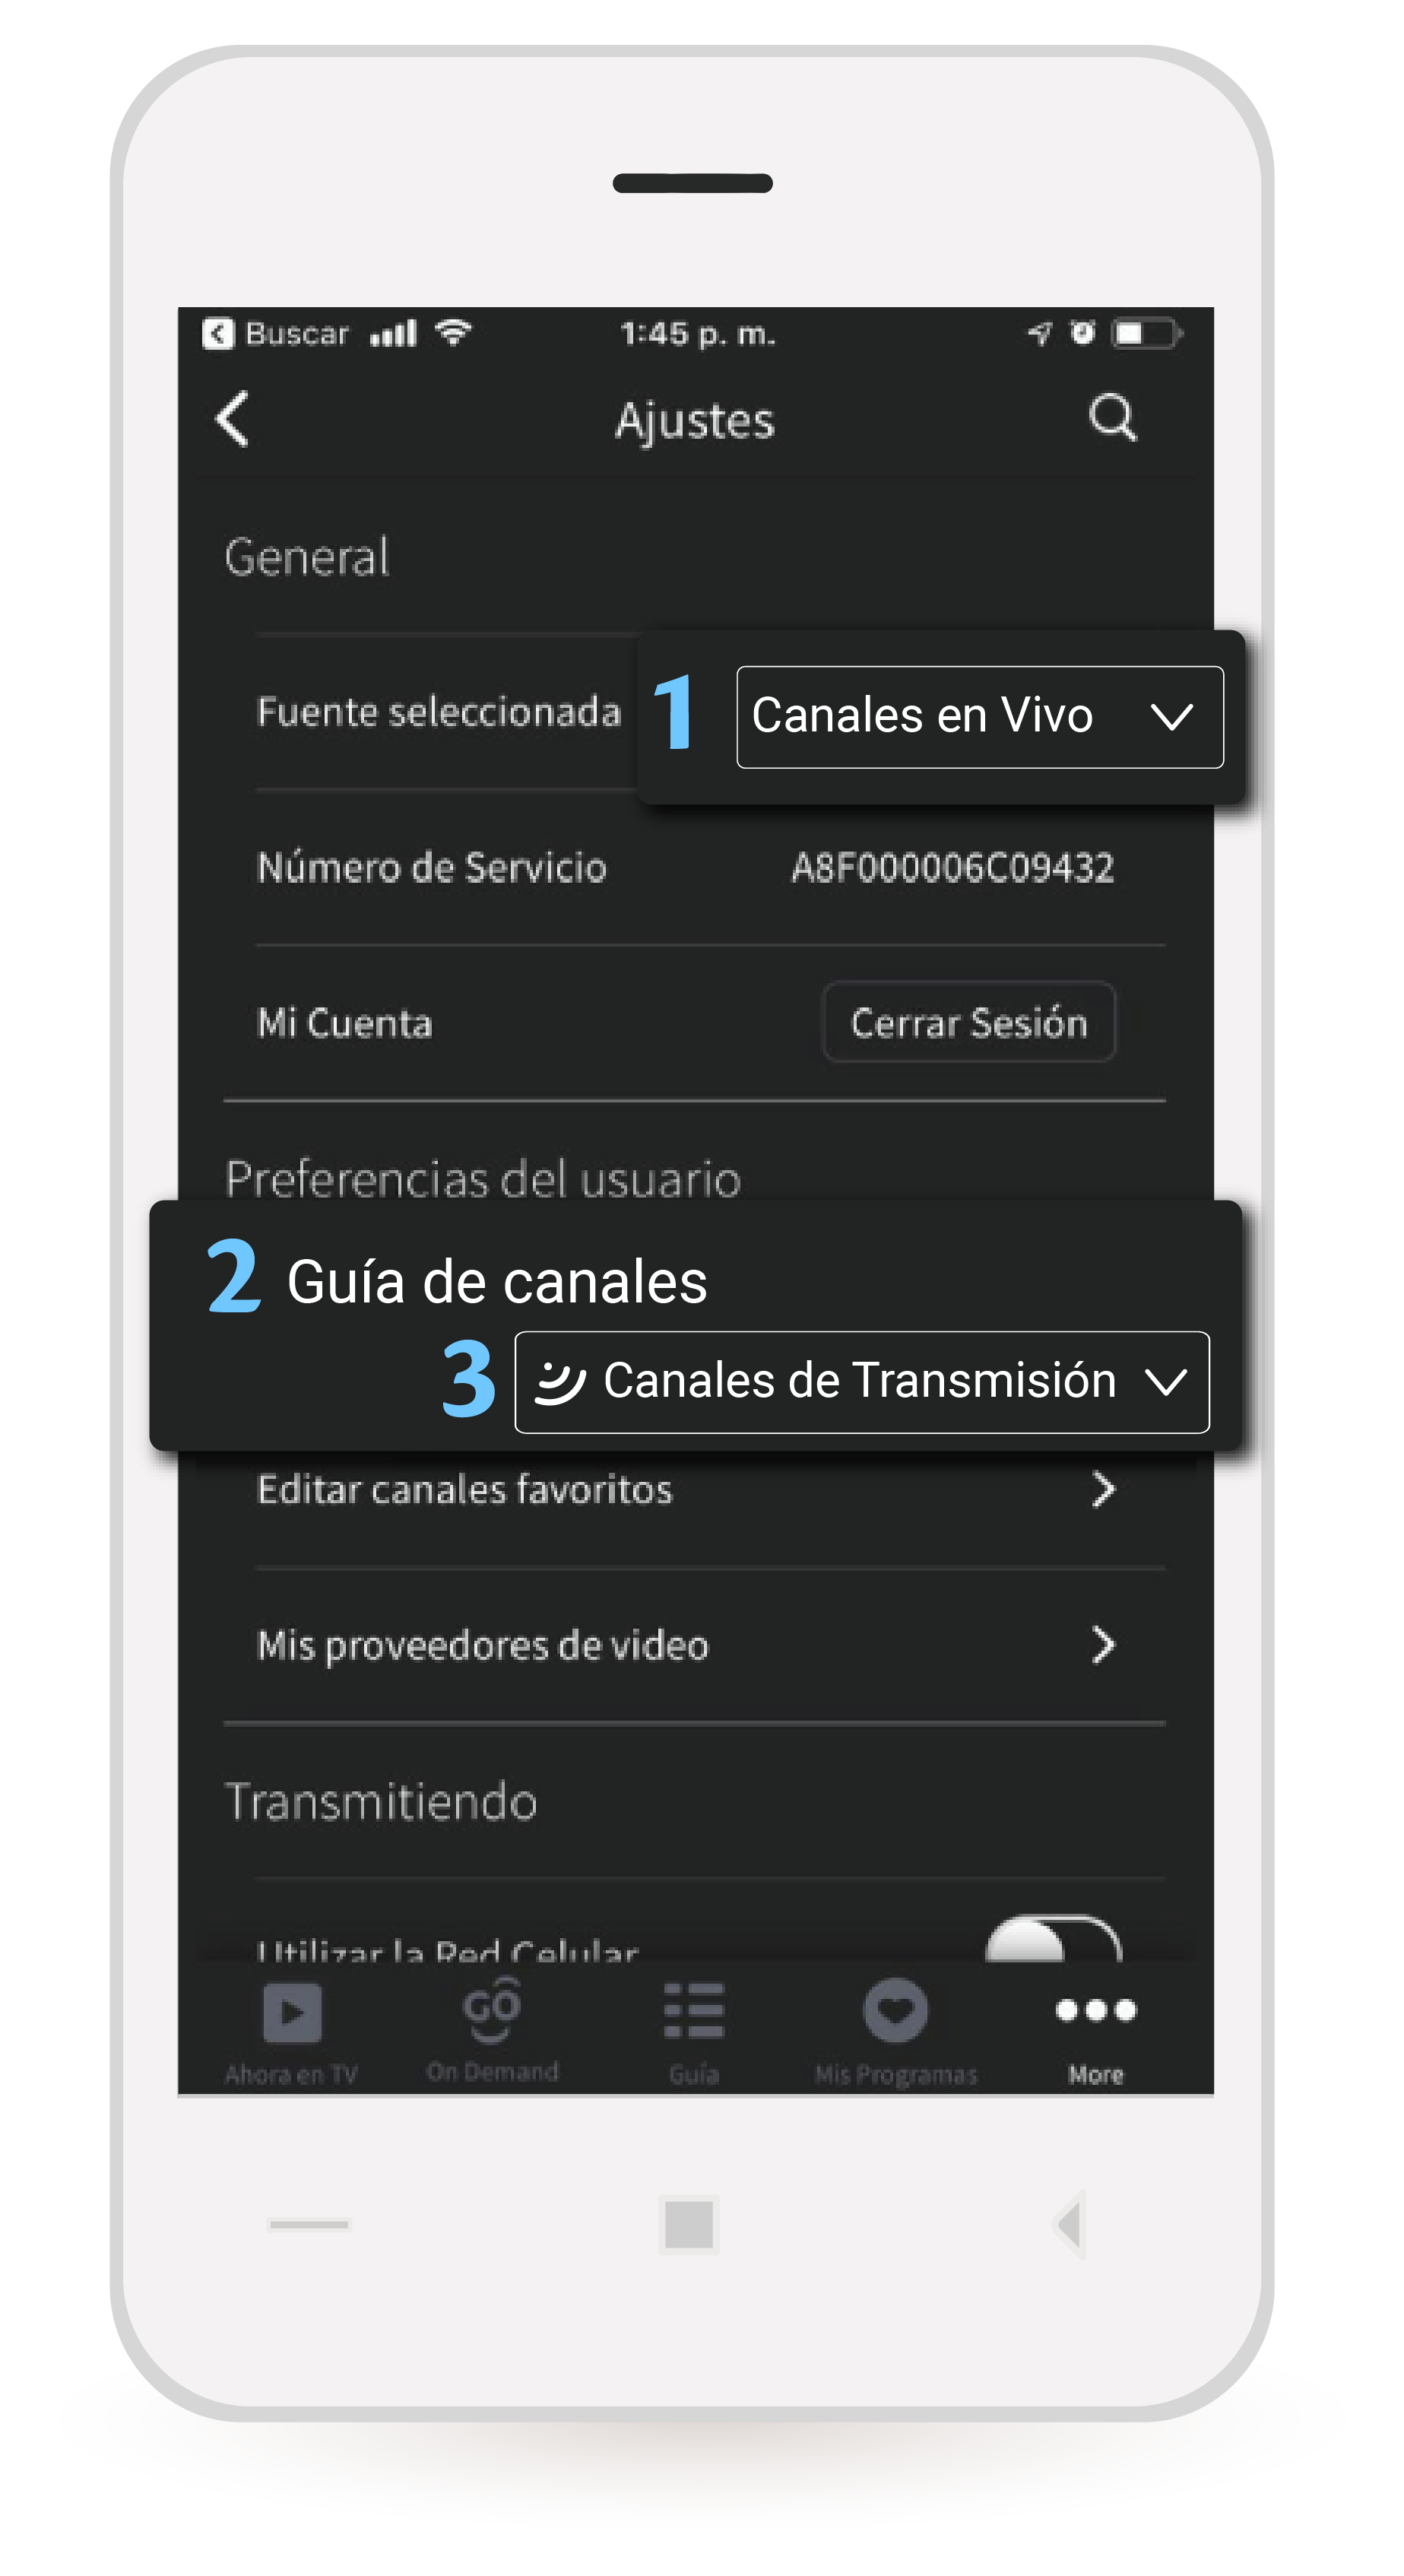 aw-Tigo One Tv iOS Paso 1 Canales en Vivo